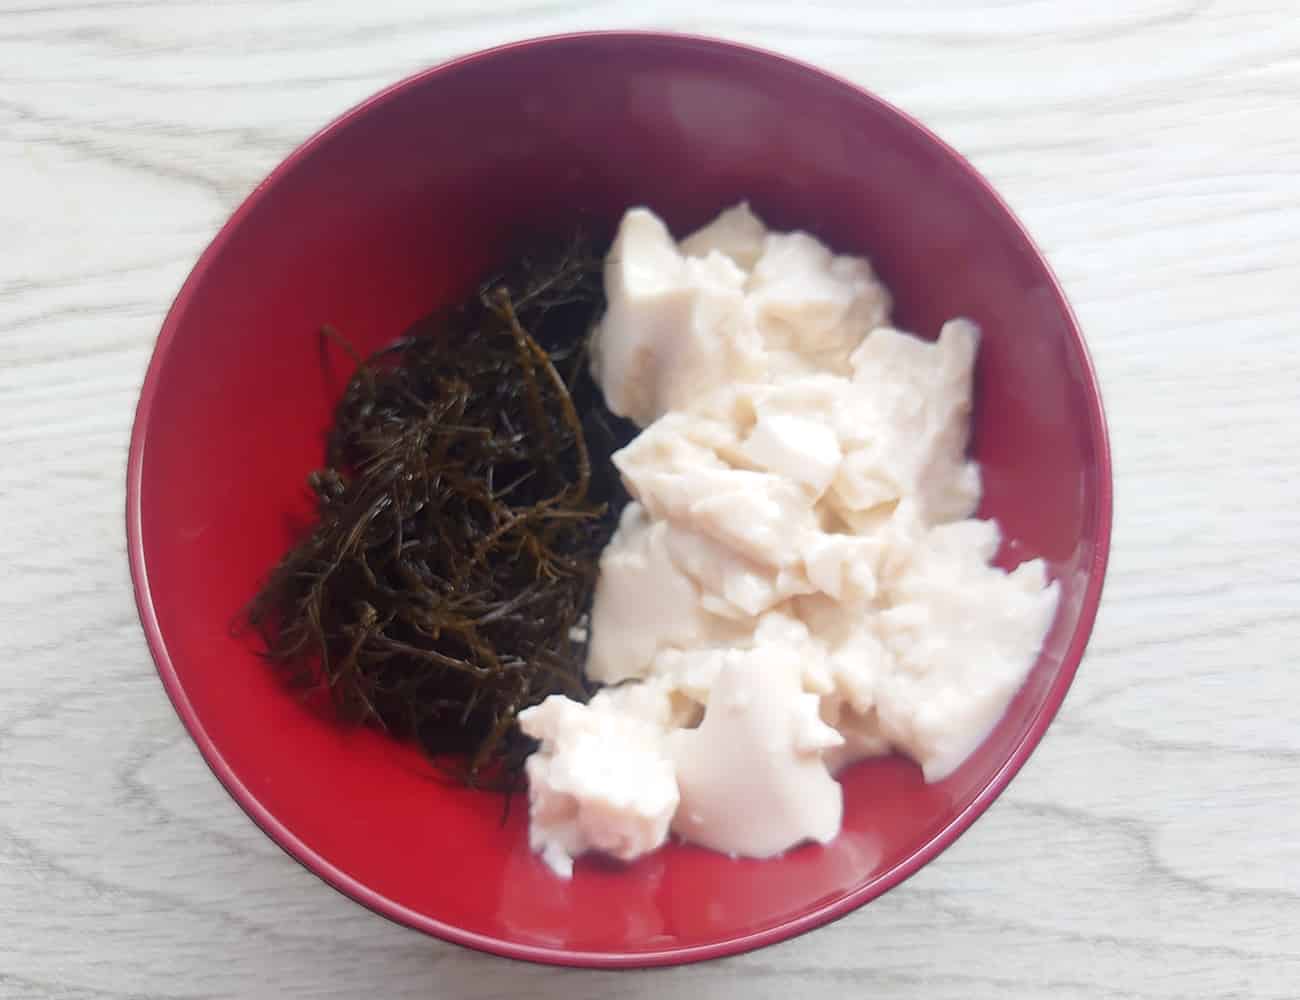 お椀に生まつもと、手で崩した豆腐1/4を入れて、味噌汁を注ぐ。